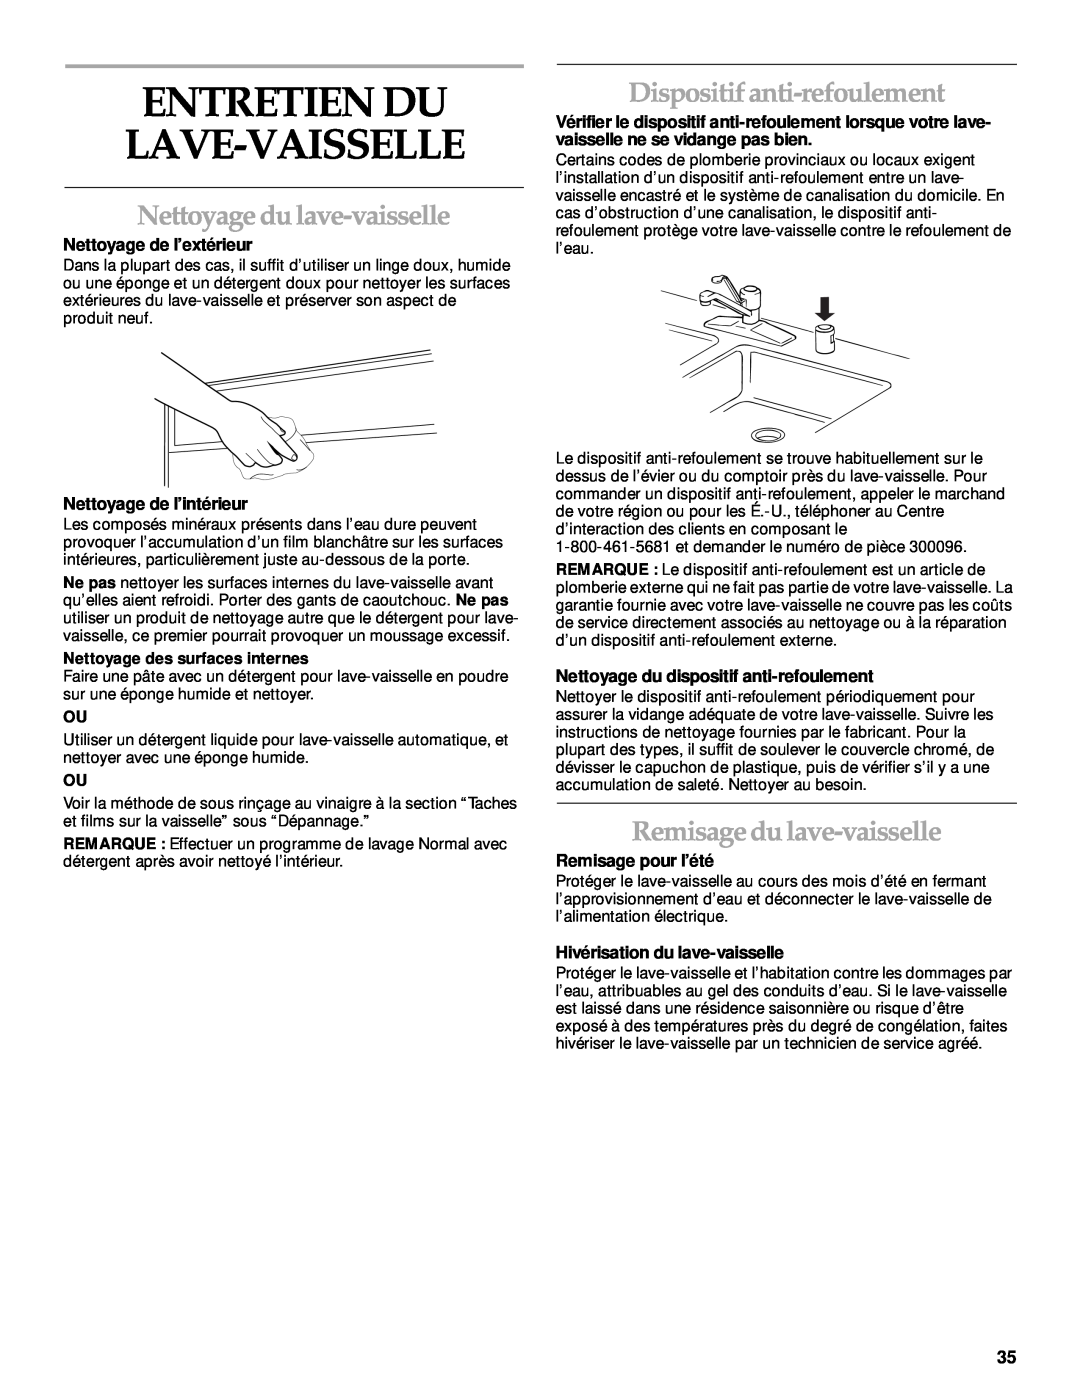 KitchenAid KUDP01TJ manual Entretien Du Lave-Vaisselle, Nettoyage du lave-vaisselle, Dispositif anti-refoulement 